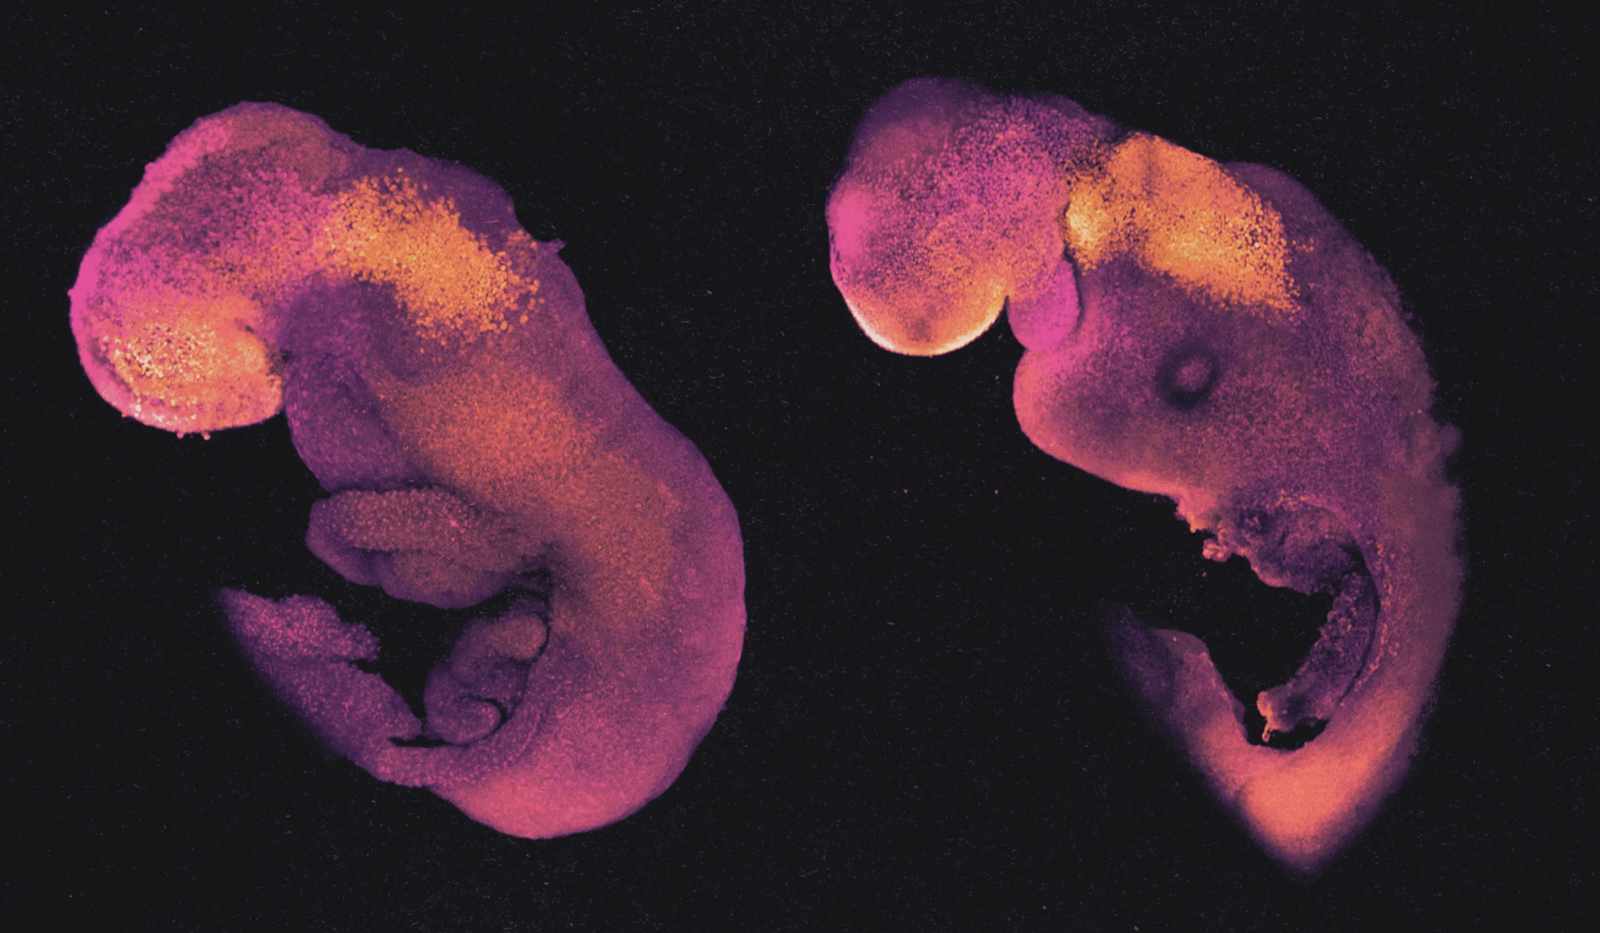 Normalny embrion myszy po lewej stronie jest w ósmym dniu rozwoju i ma struktury, które wyznaczają początki jego mózgu, serca i innych narządów. Po prawej stronie znajduje się porównywalnie rozwinięty syntetyczny model embrionu, wyhodowany w całości z mysich komórek macierzystych zamiast z zapłodnionej komórki jajowej /Fot. University of Cambridge
